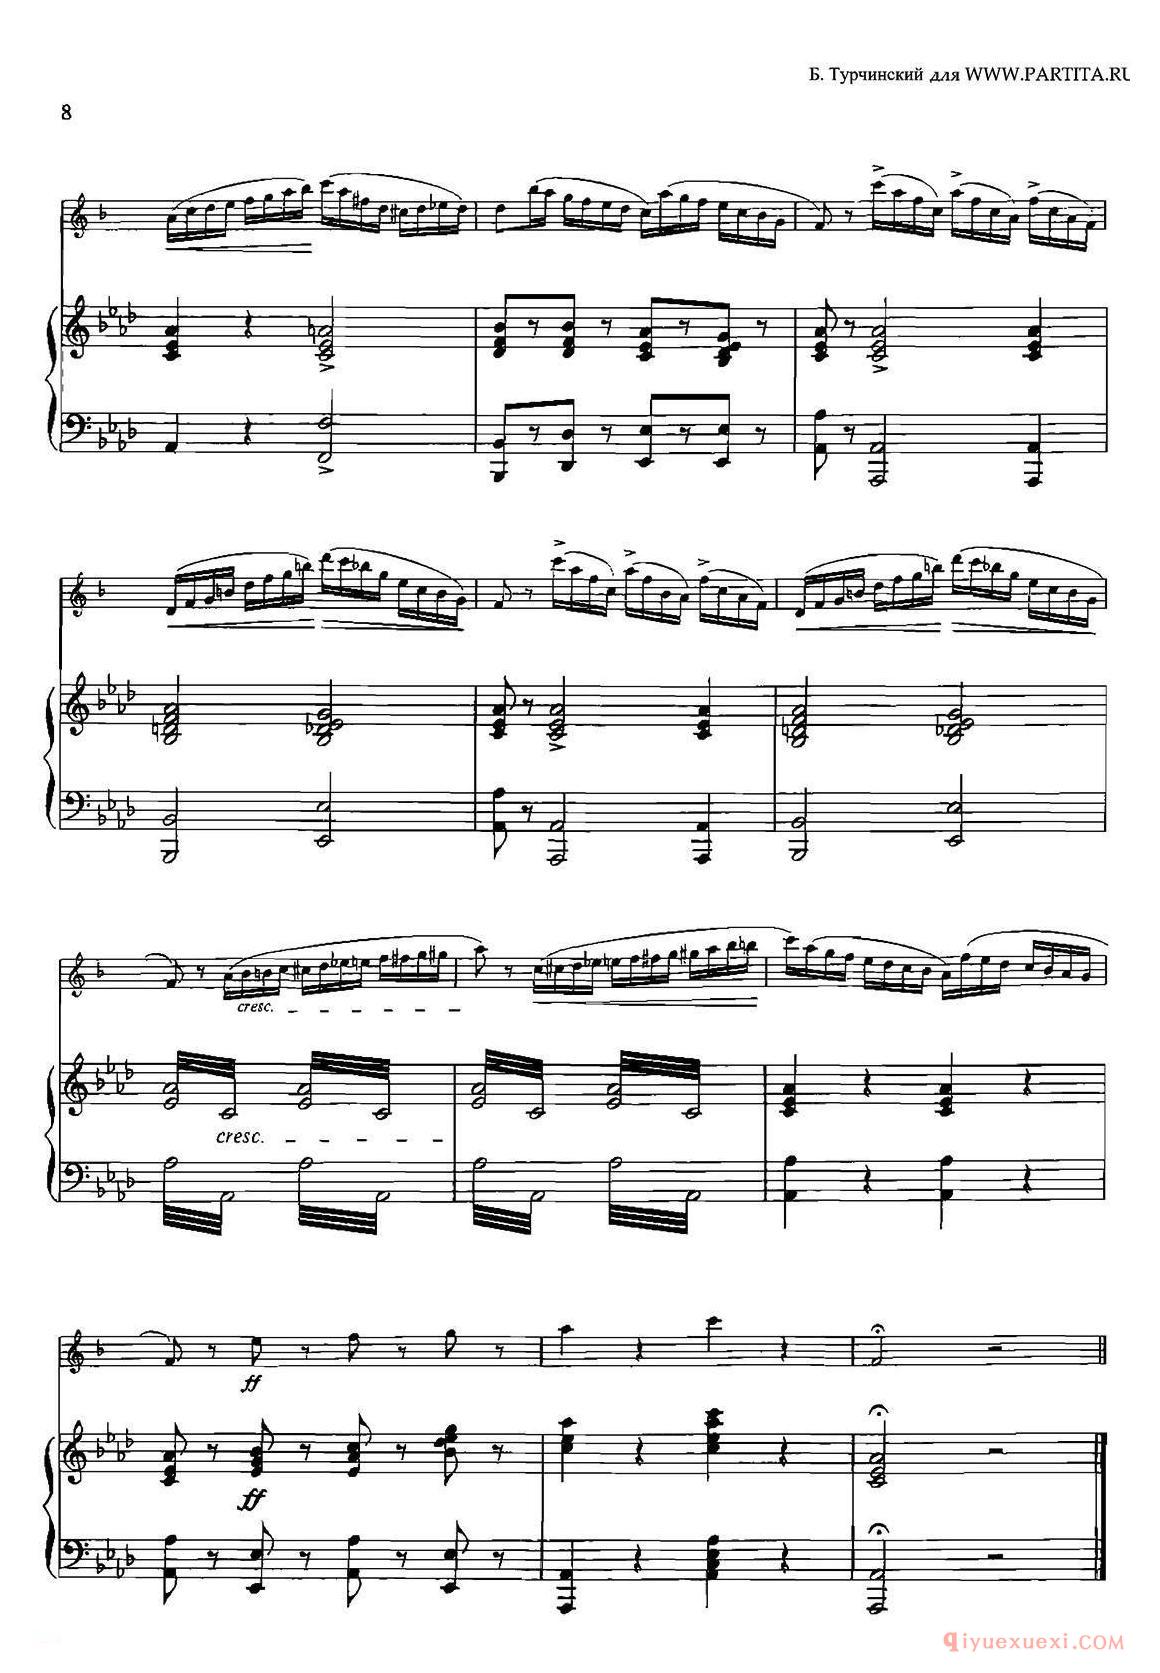 萨克斯乐谱【CONCERTino Op.78 萨克斯+钢琴伴奏】五线谱